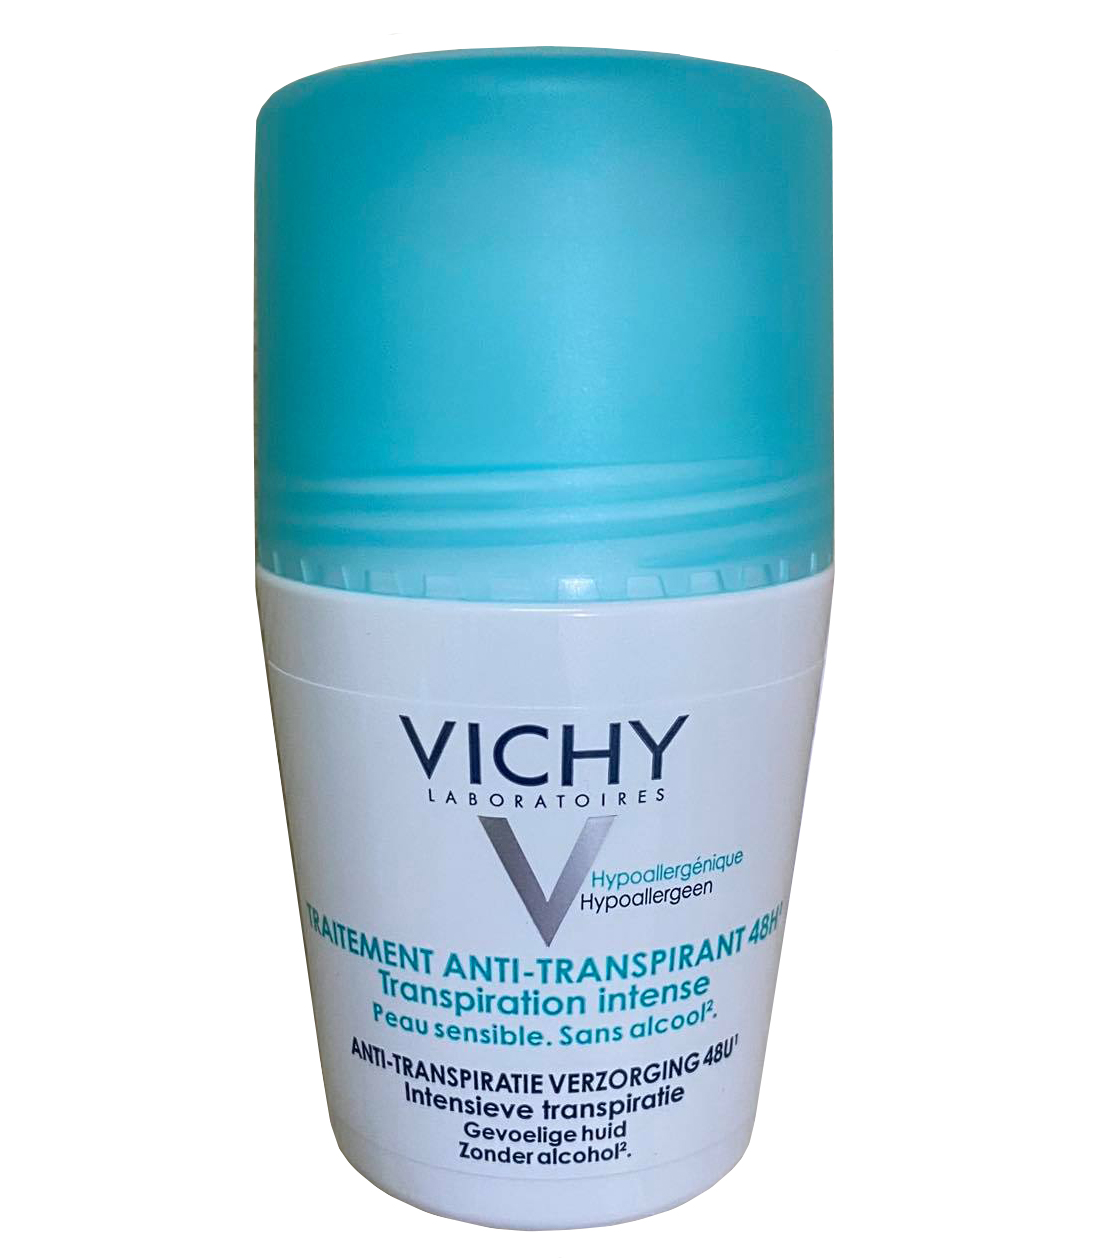 Lăn hỗ trợ khử mùi Vichy ngăn mùi khó chịu tạo cảm giac thoải mái, thông thoáng mẫu mới